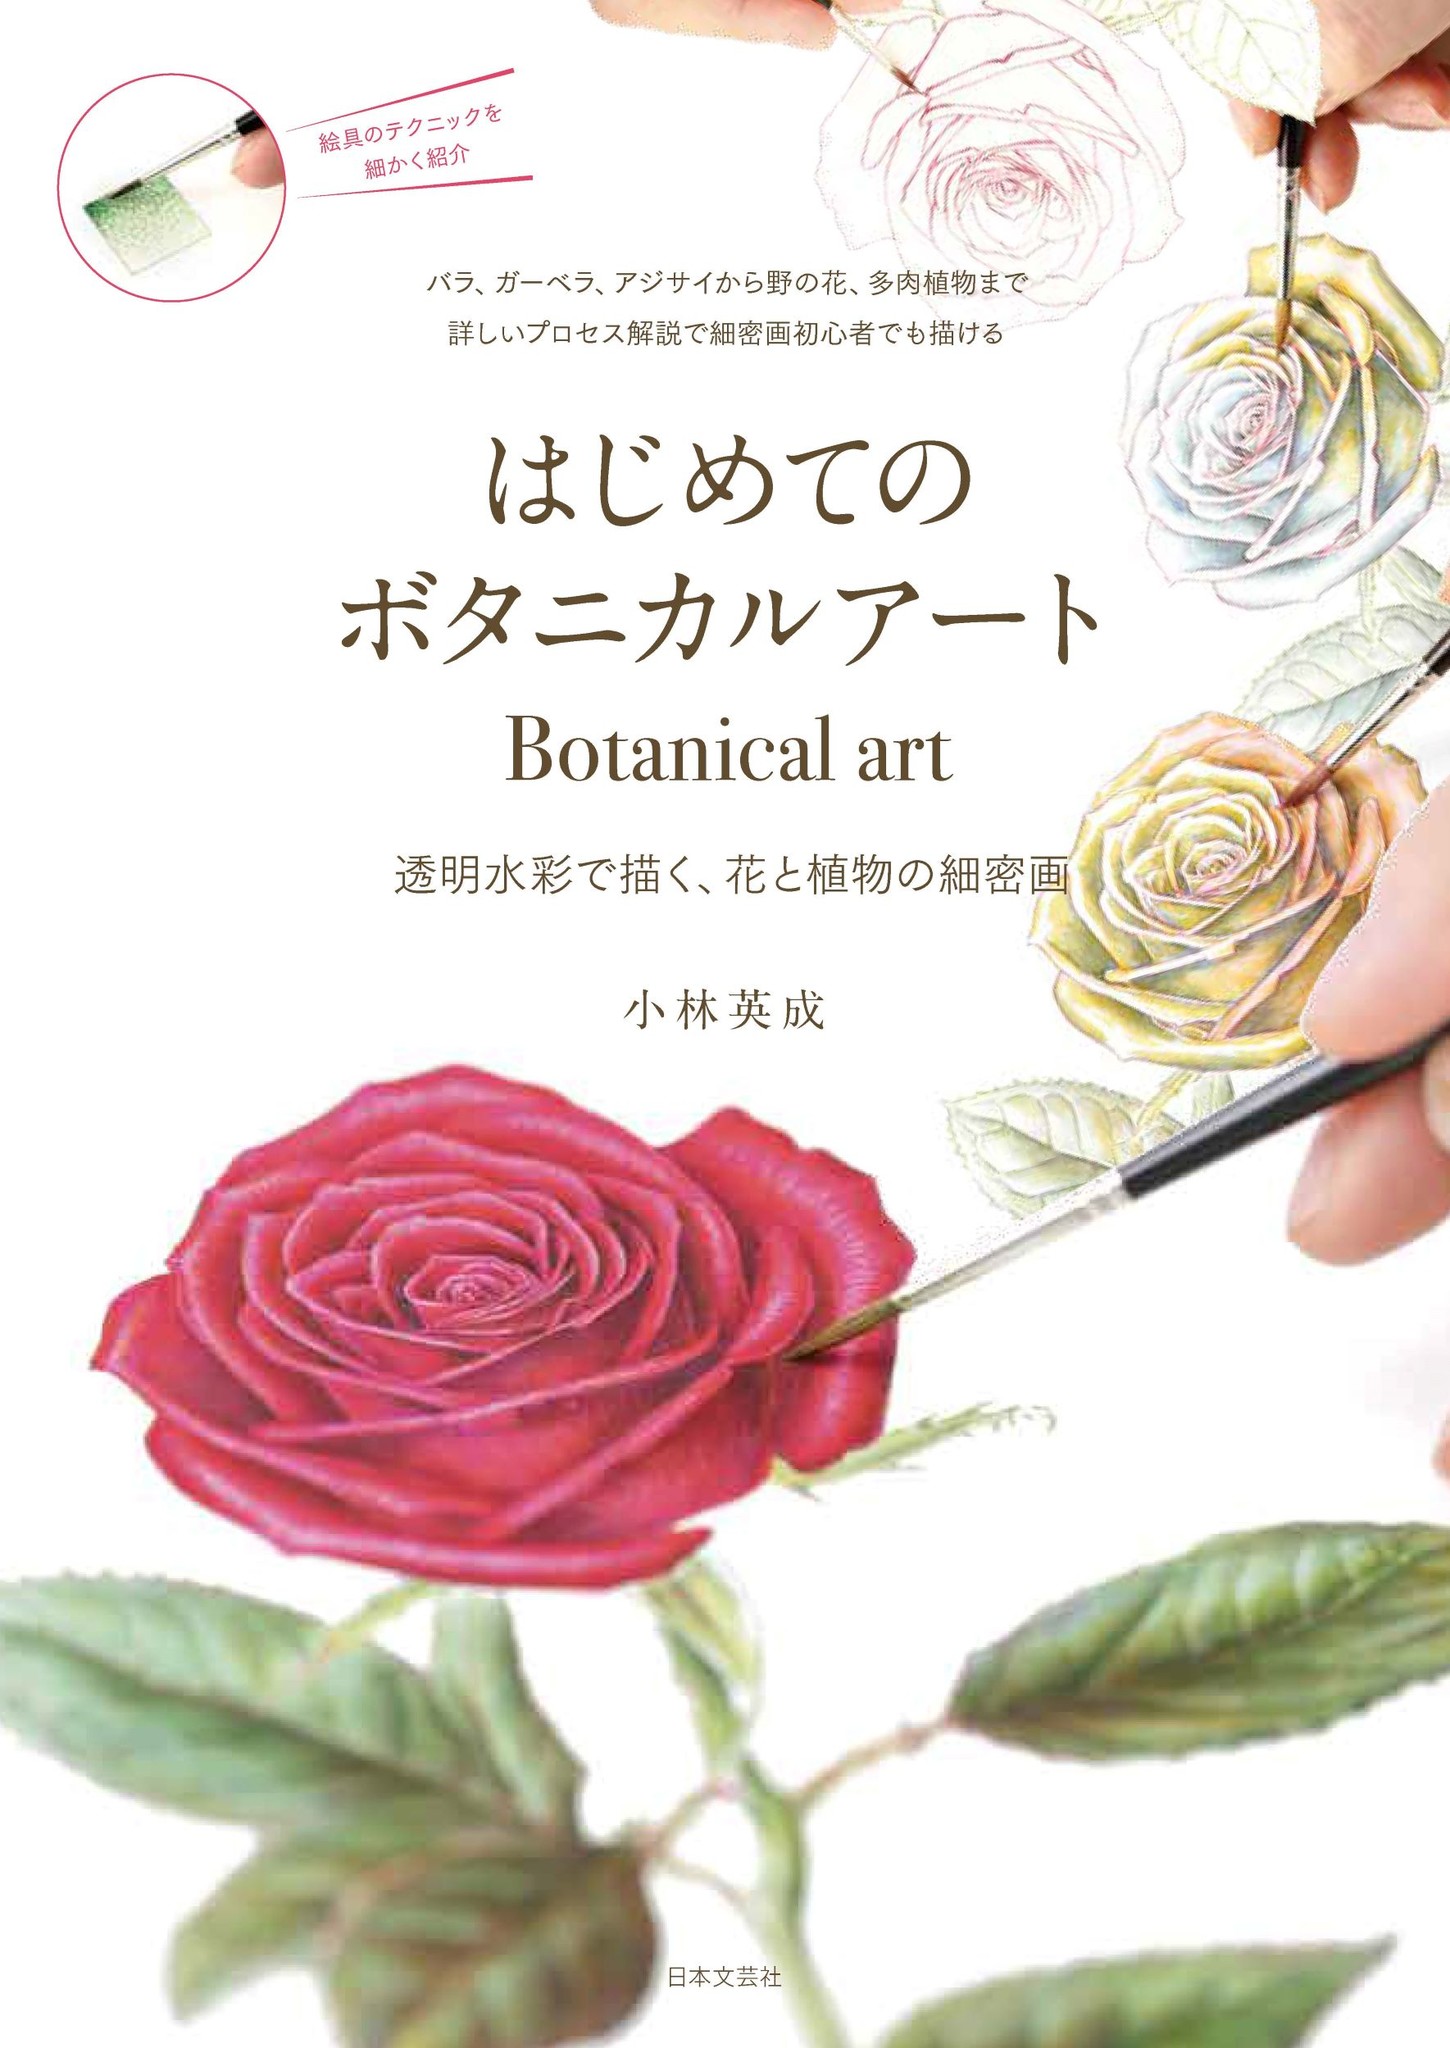 透明水彩で描く 花と植物の細密画 はじめてのボタニカルアート 9 17発売 株式会社日本文芸社のプレスリリース